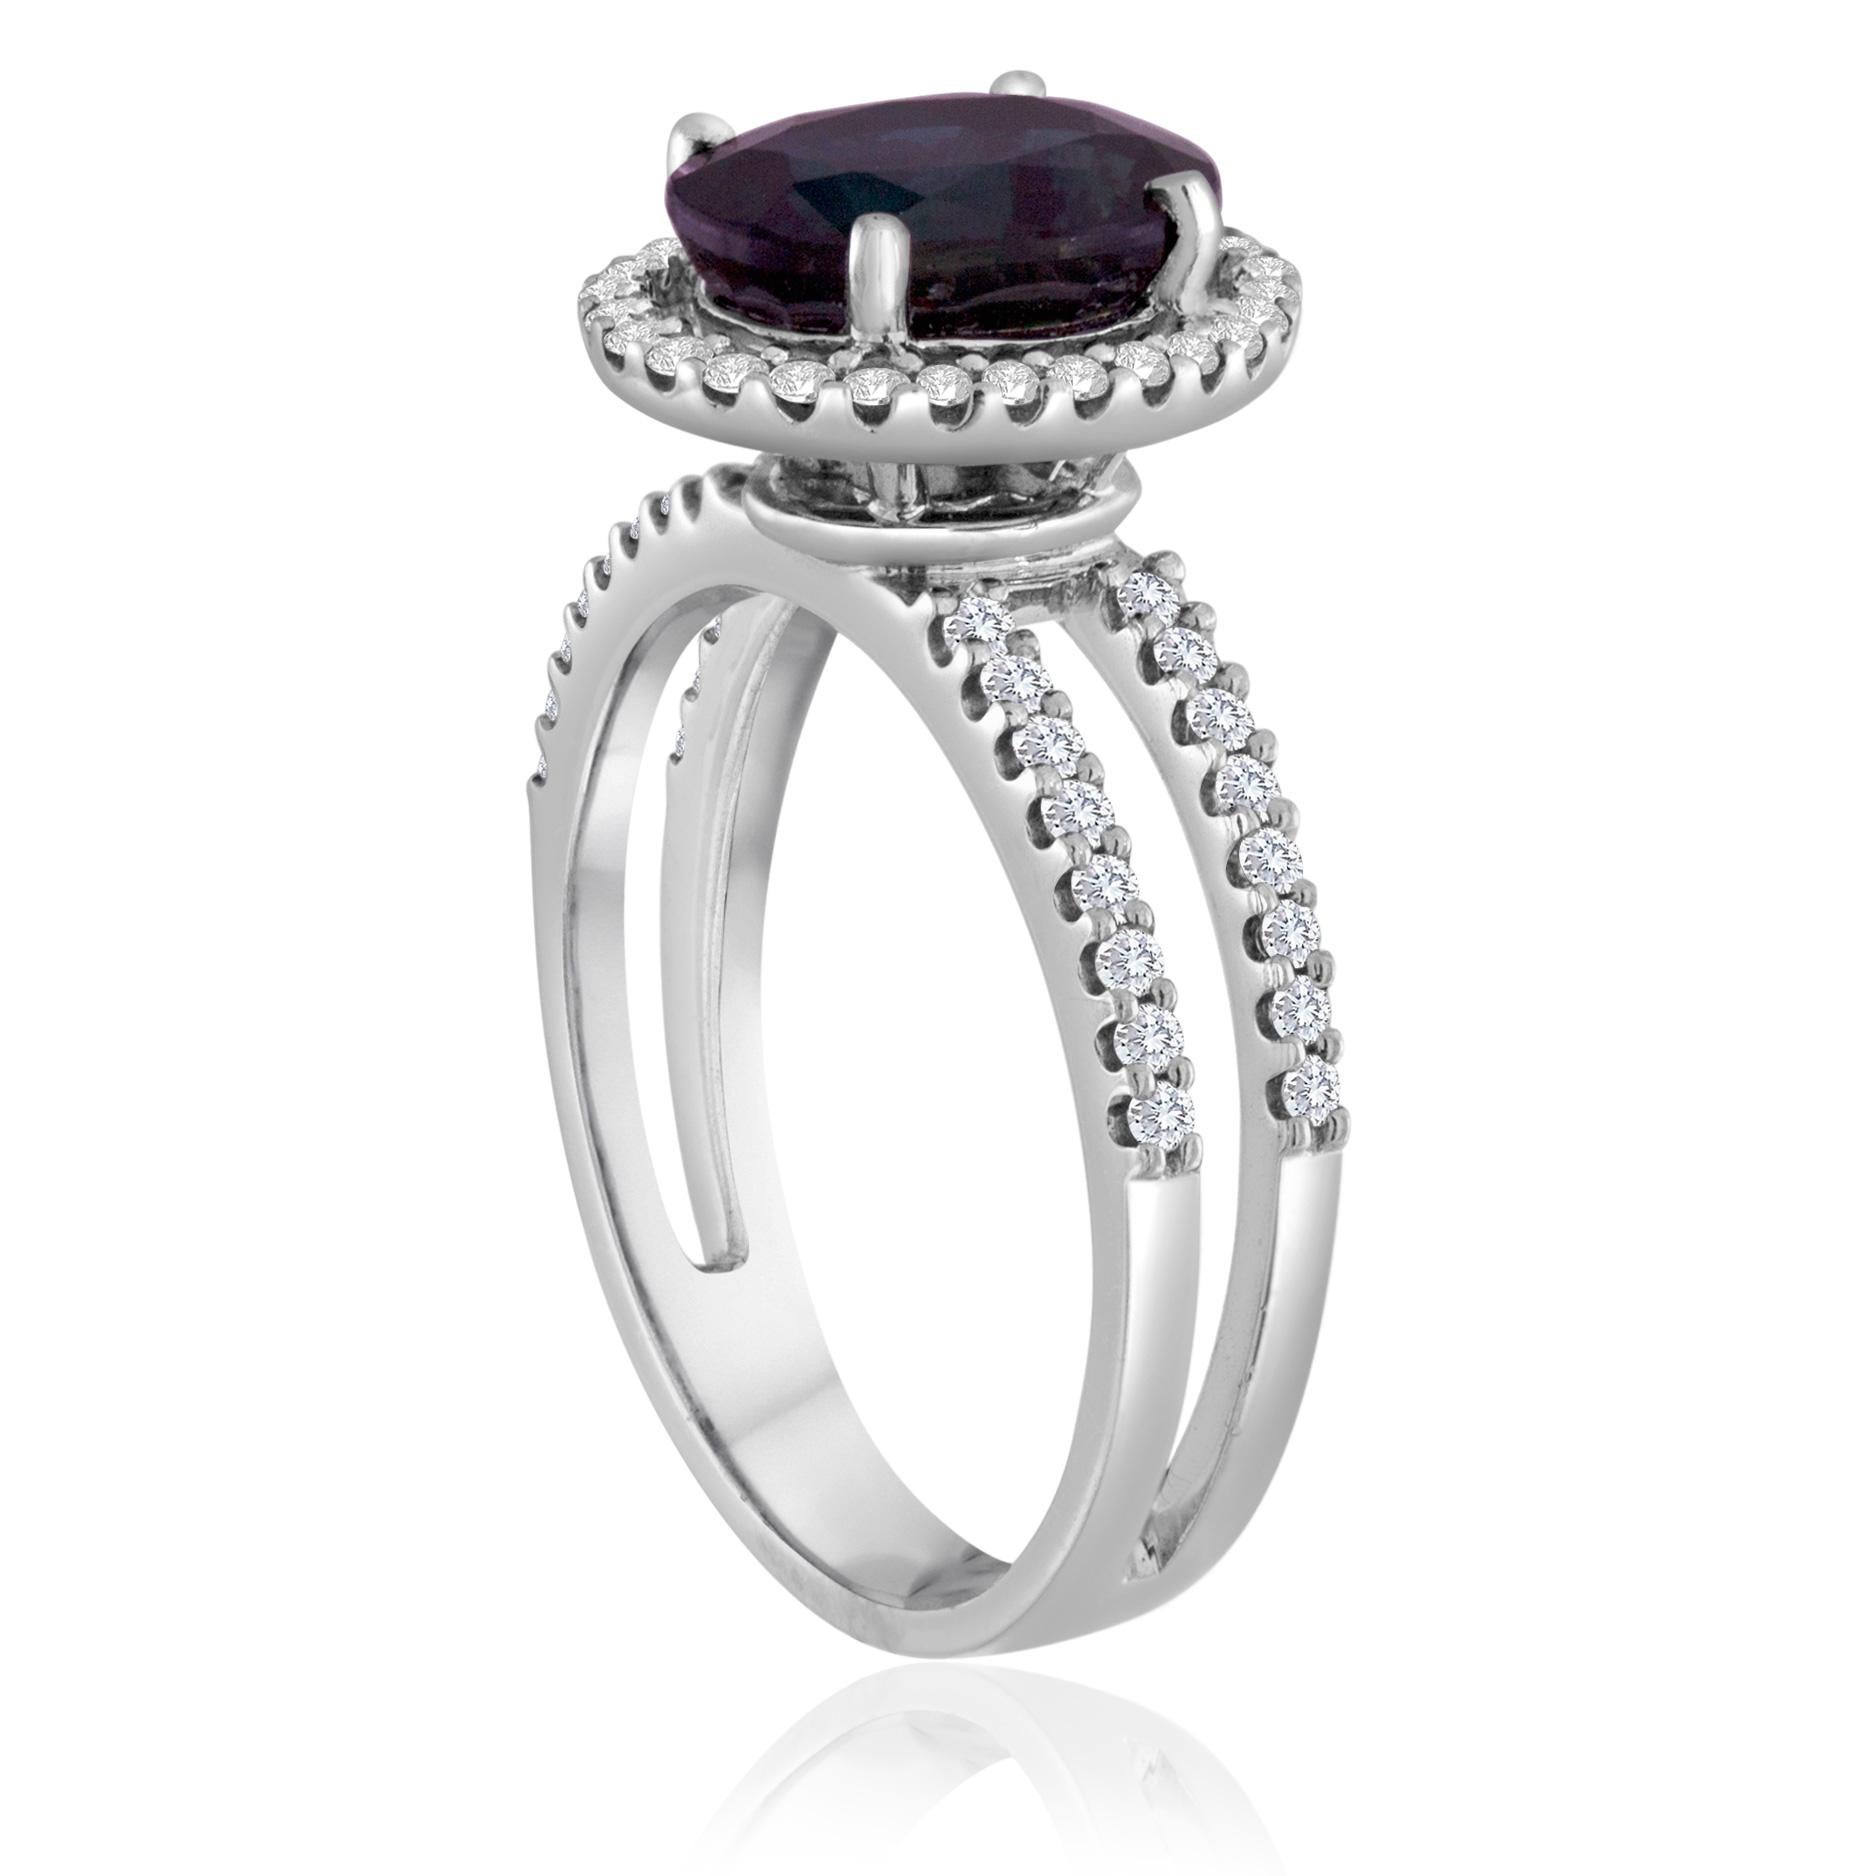 Saphirstein im Halo mit doppelten Diamantbändern Ring
Der Ring ist 18K Weißgold Ring
Es sind 0,50 ct Diamanten F/G VS/SI
Der Center Stein ist 2,82 Karat Oval Blauer Saphir HEATED
Der Ring ist eine Größe 6.00, sizable.
Der Ring wiegt 4,7 Gramm